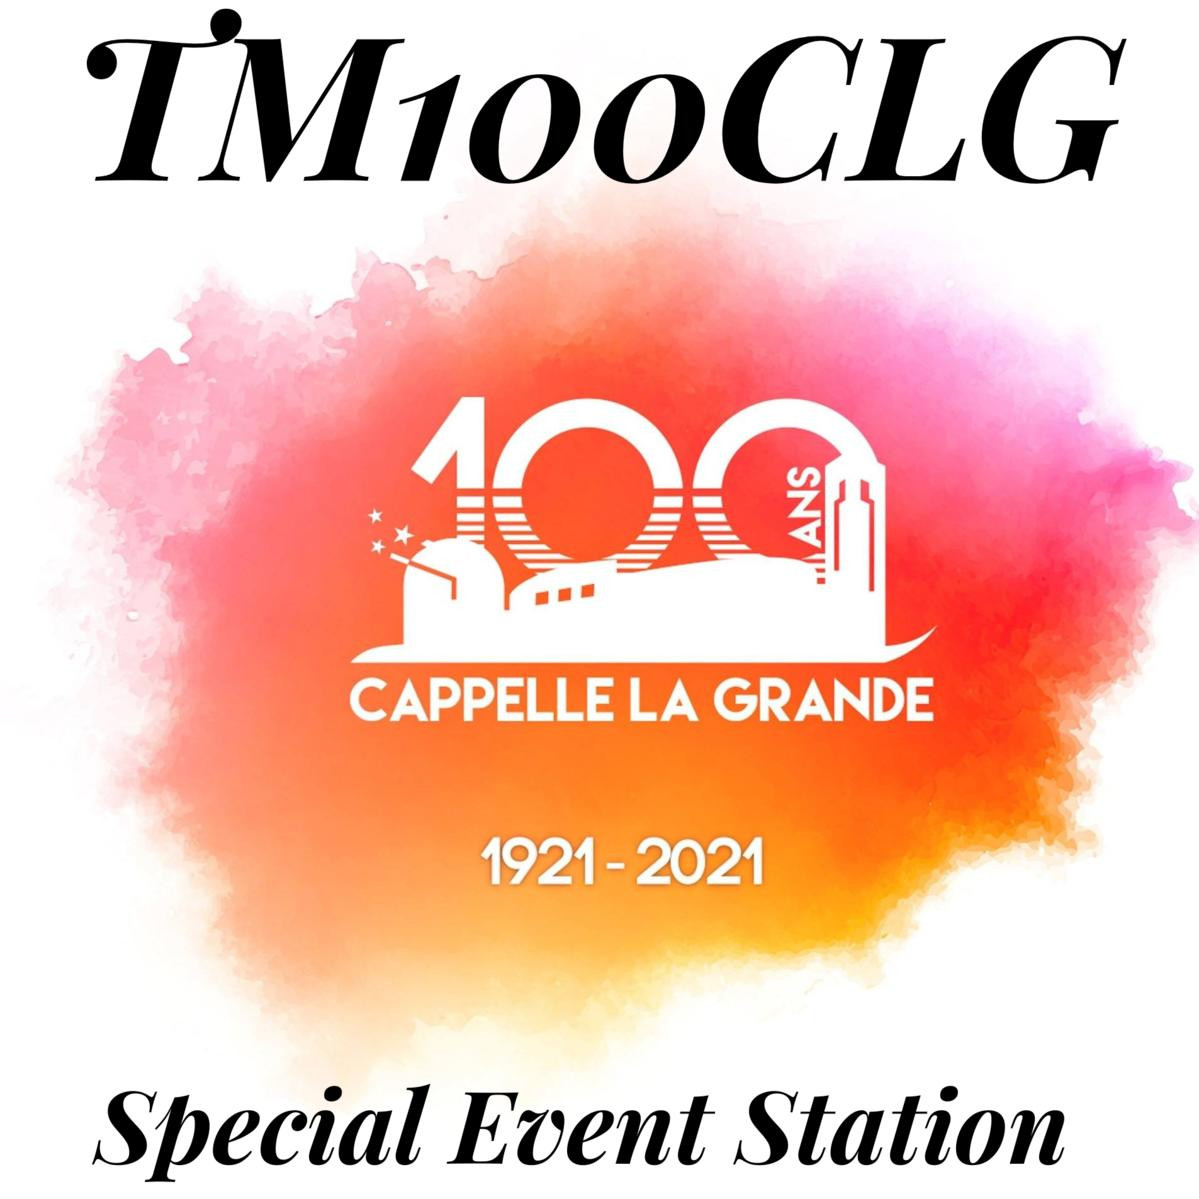 TM100CLG Cappelle la Grande, France